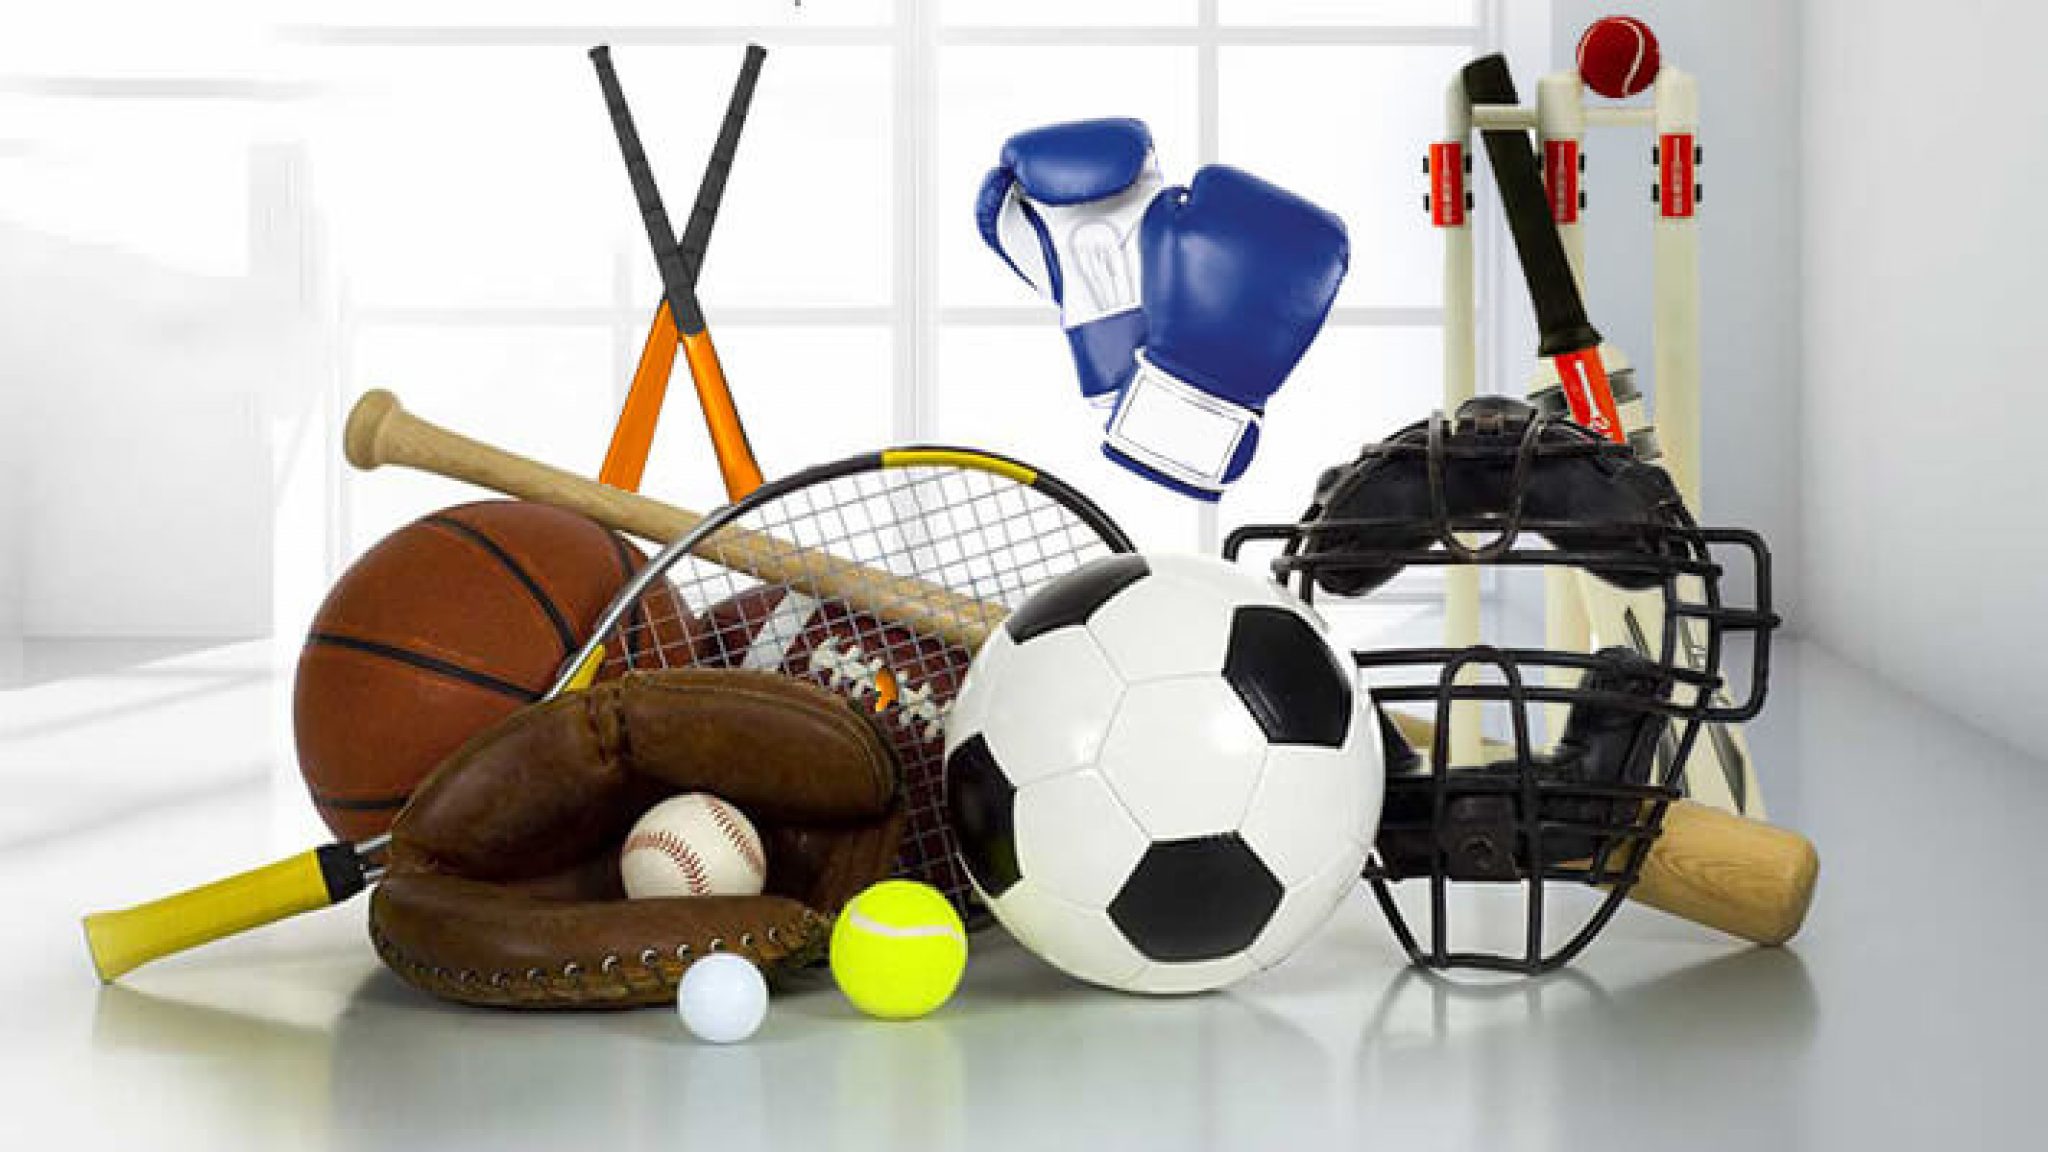 Sport items. Спортивный инвентарь. Спортивный инвентарь для детей. Спортивное оборудование и инвентарь. Спортивное снаряжение.